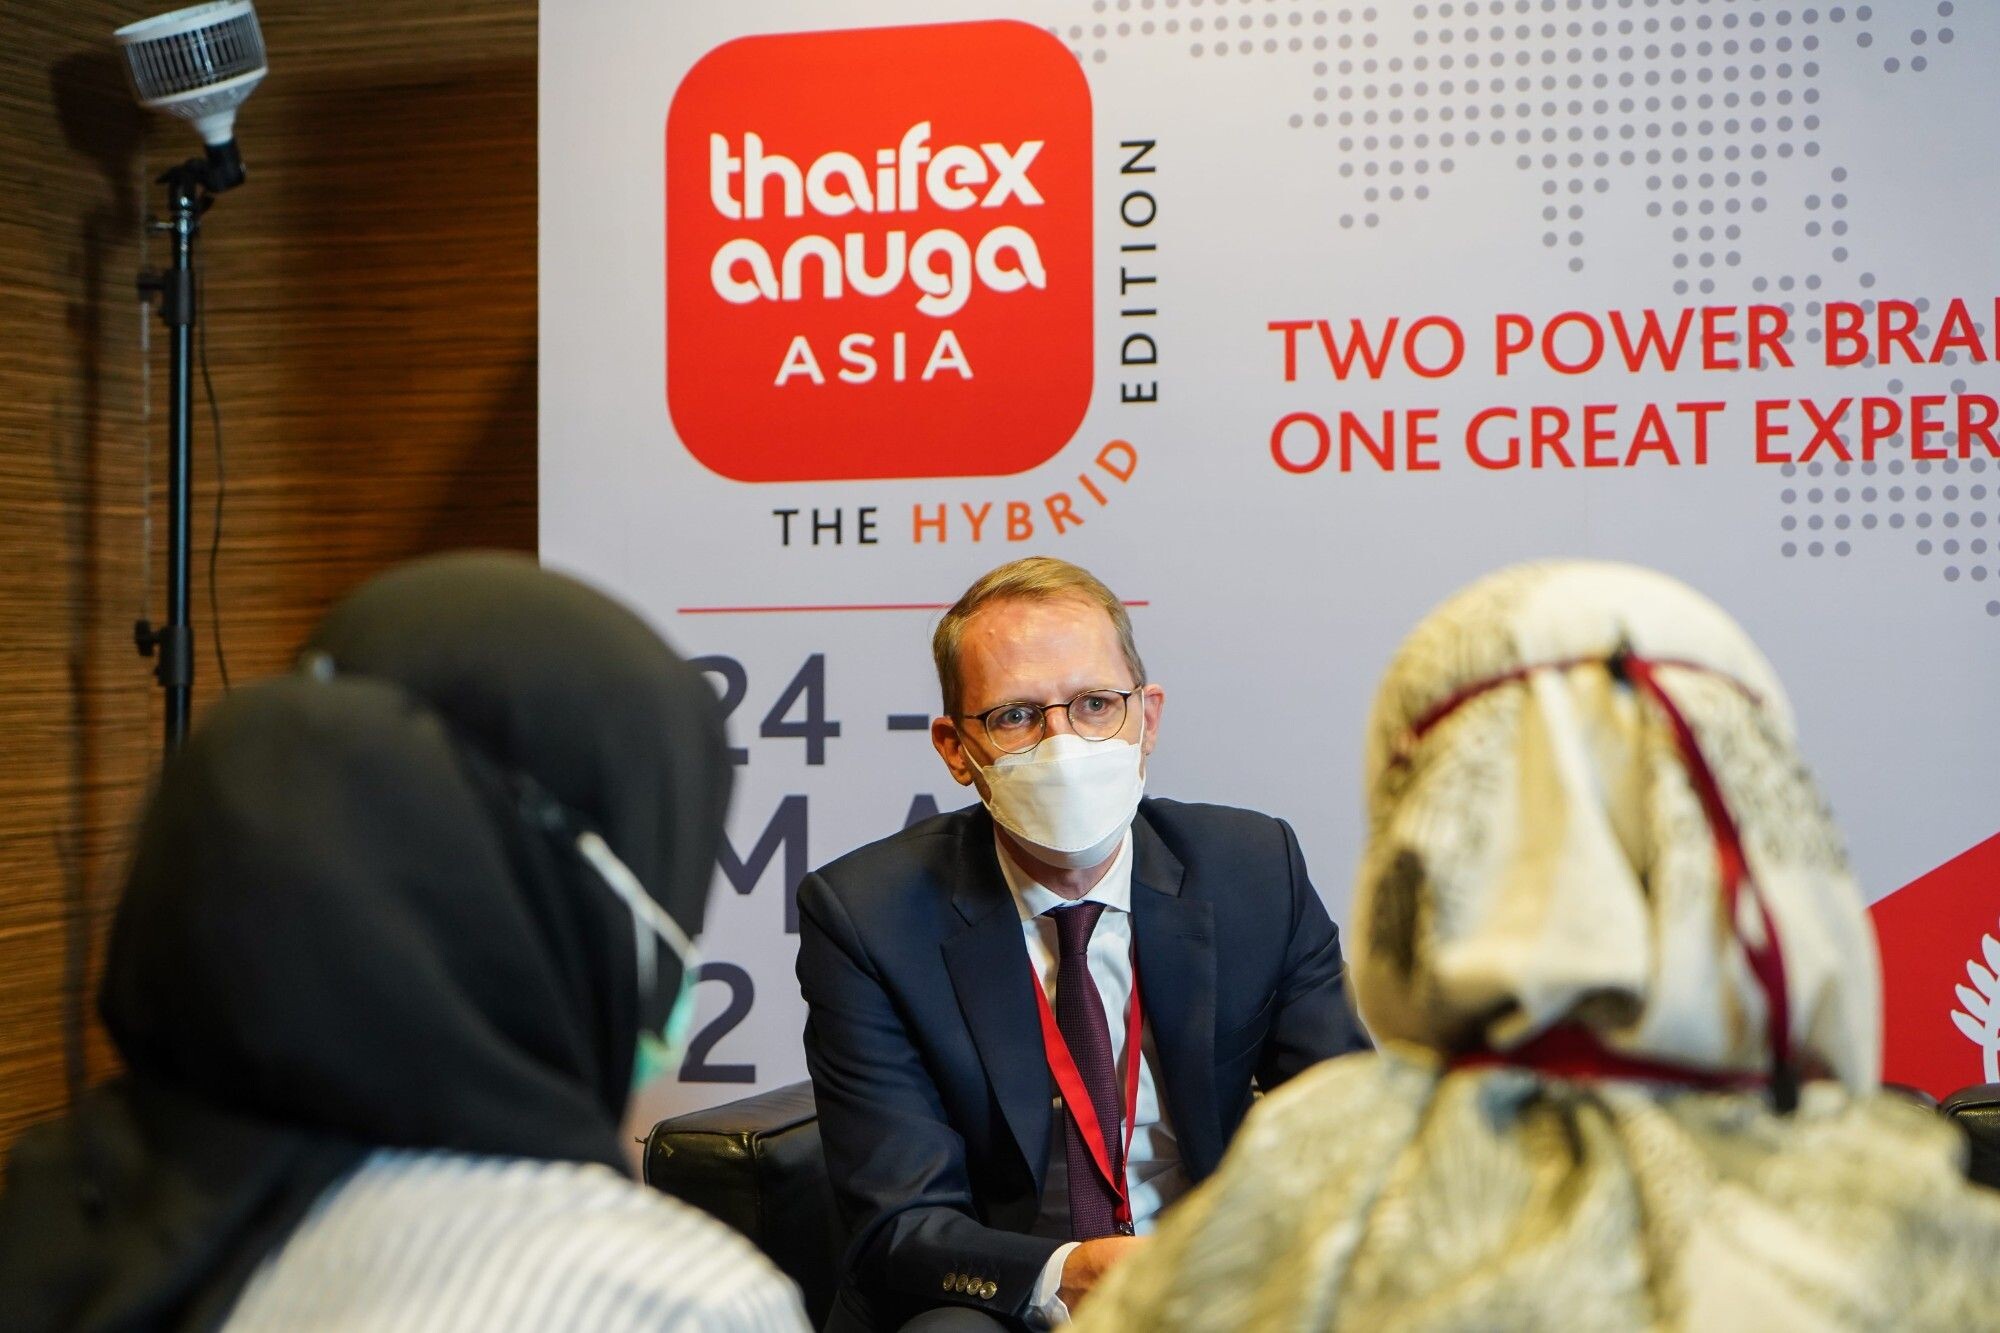 เปิดงาน THAIFEX - Anuga Asia 2022 วันแรกคึกคัก เดินเครื่องสู่งานสัปดาห์แห่งนวัตกรรมอาหารและเครื่องดื่ม และการพัฒนาอุตสาหกรรมอาหารสู่อนาคต